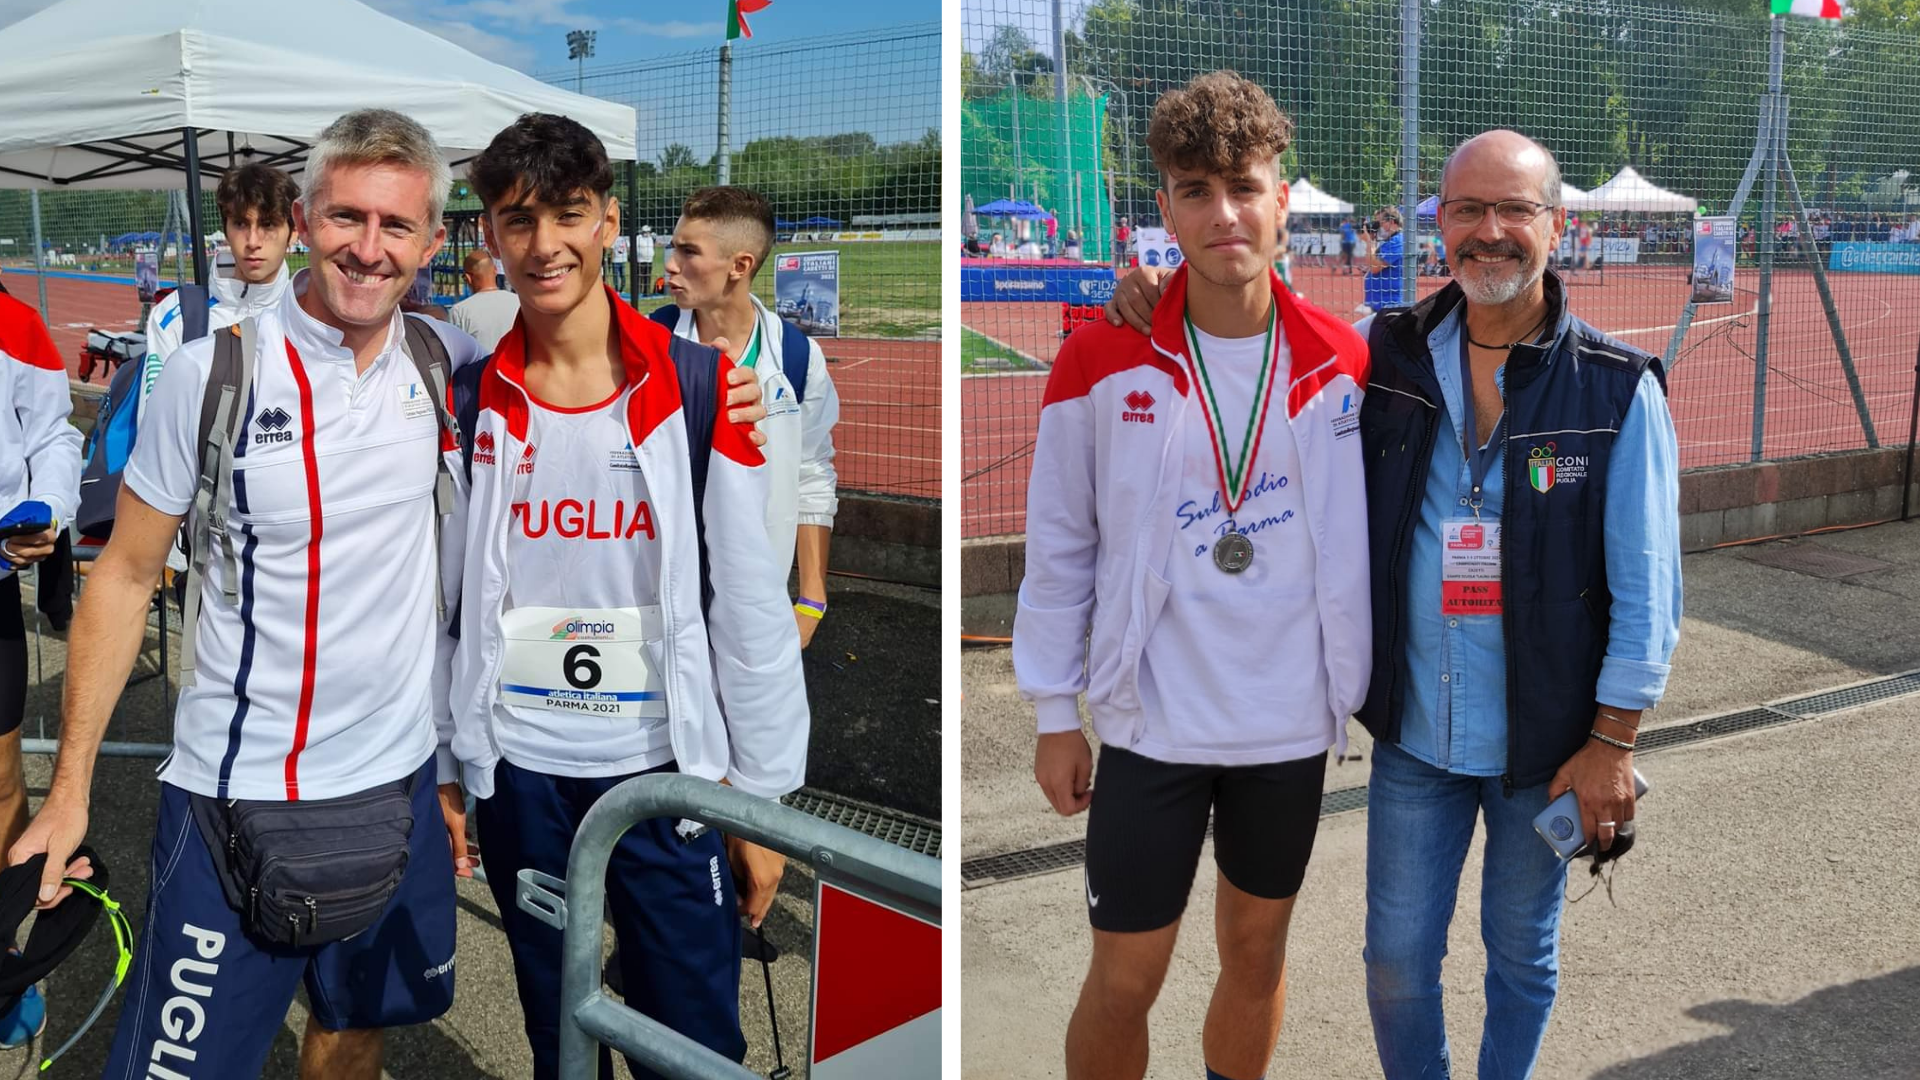 Atletica leggera, per Foggia arrivano due medaglie d’argento dai campionati italiani under 16.